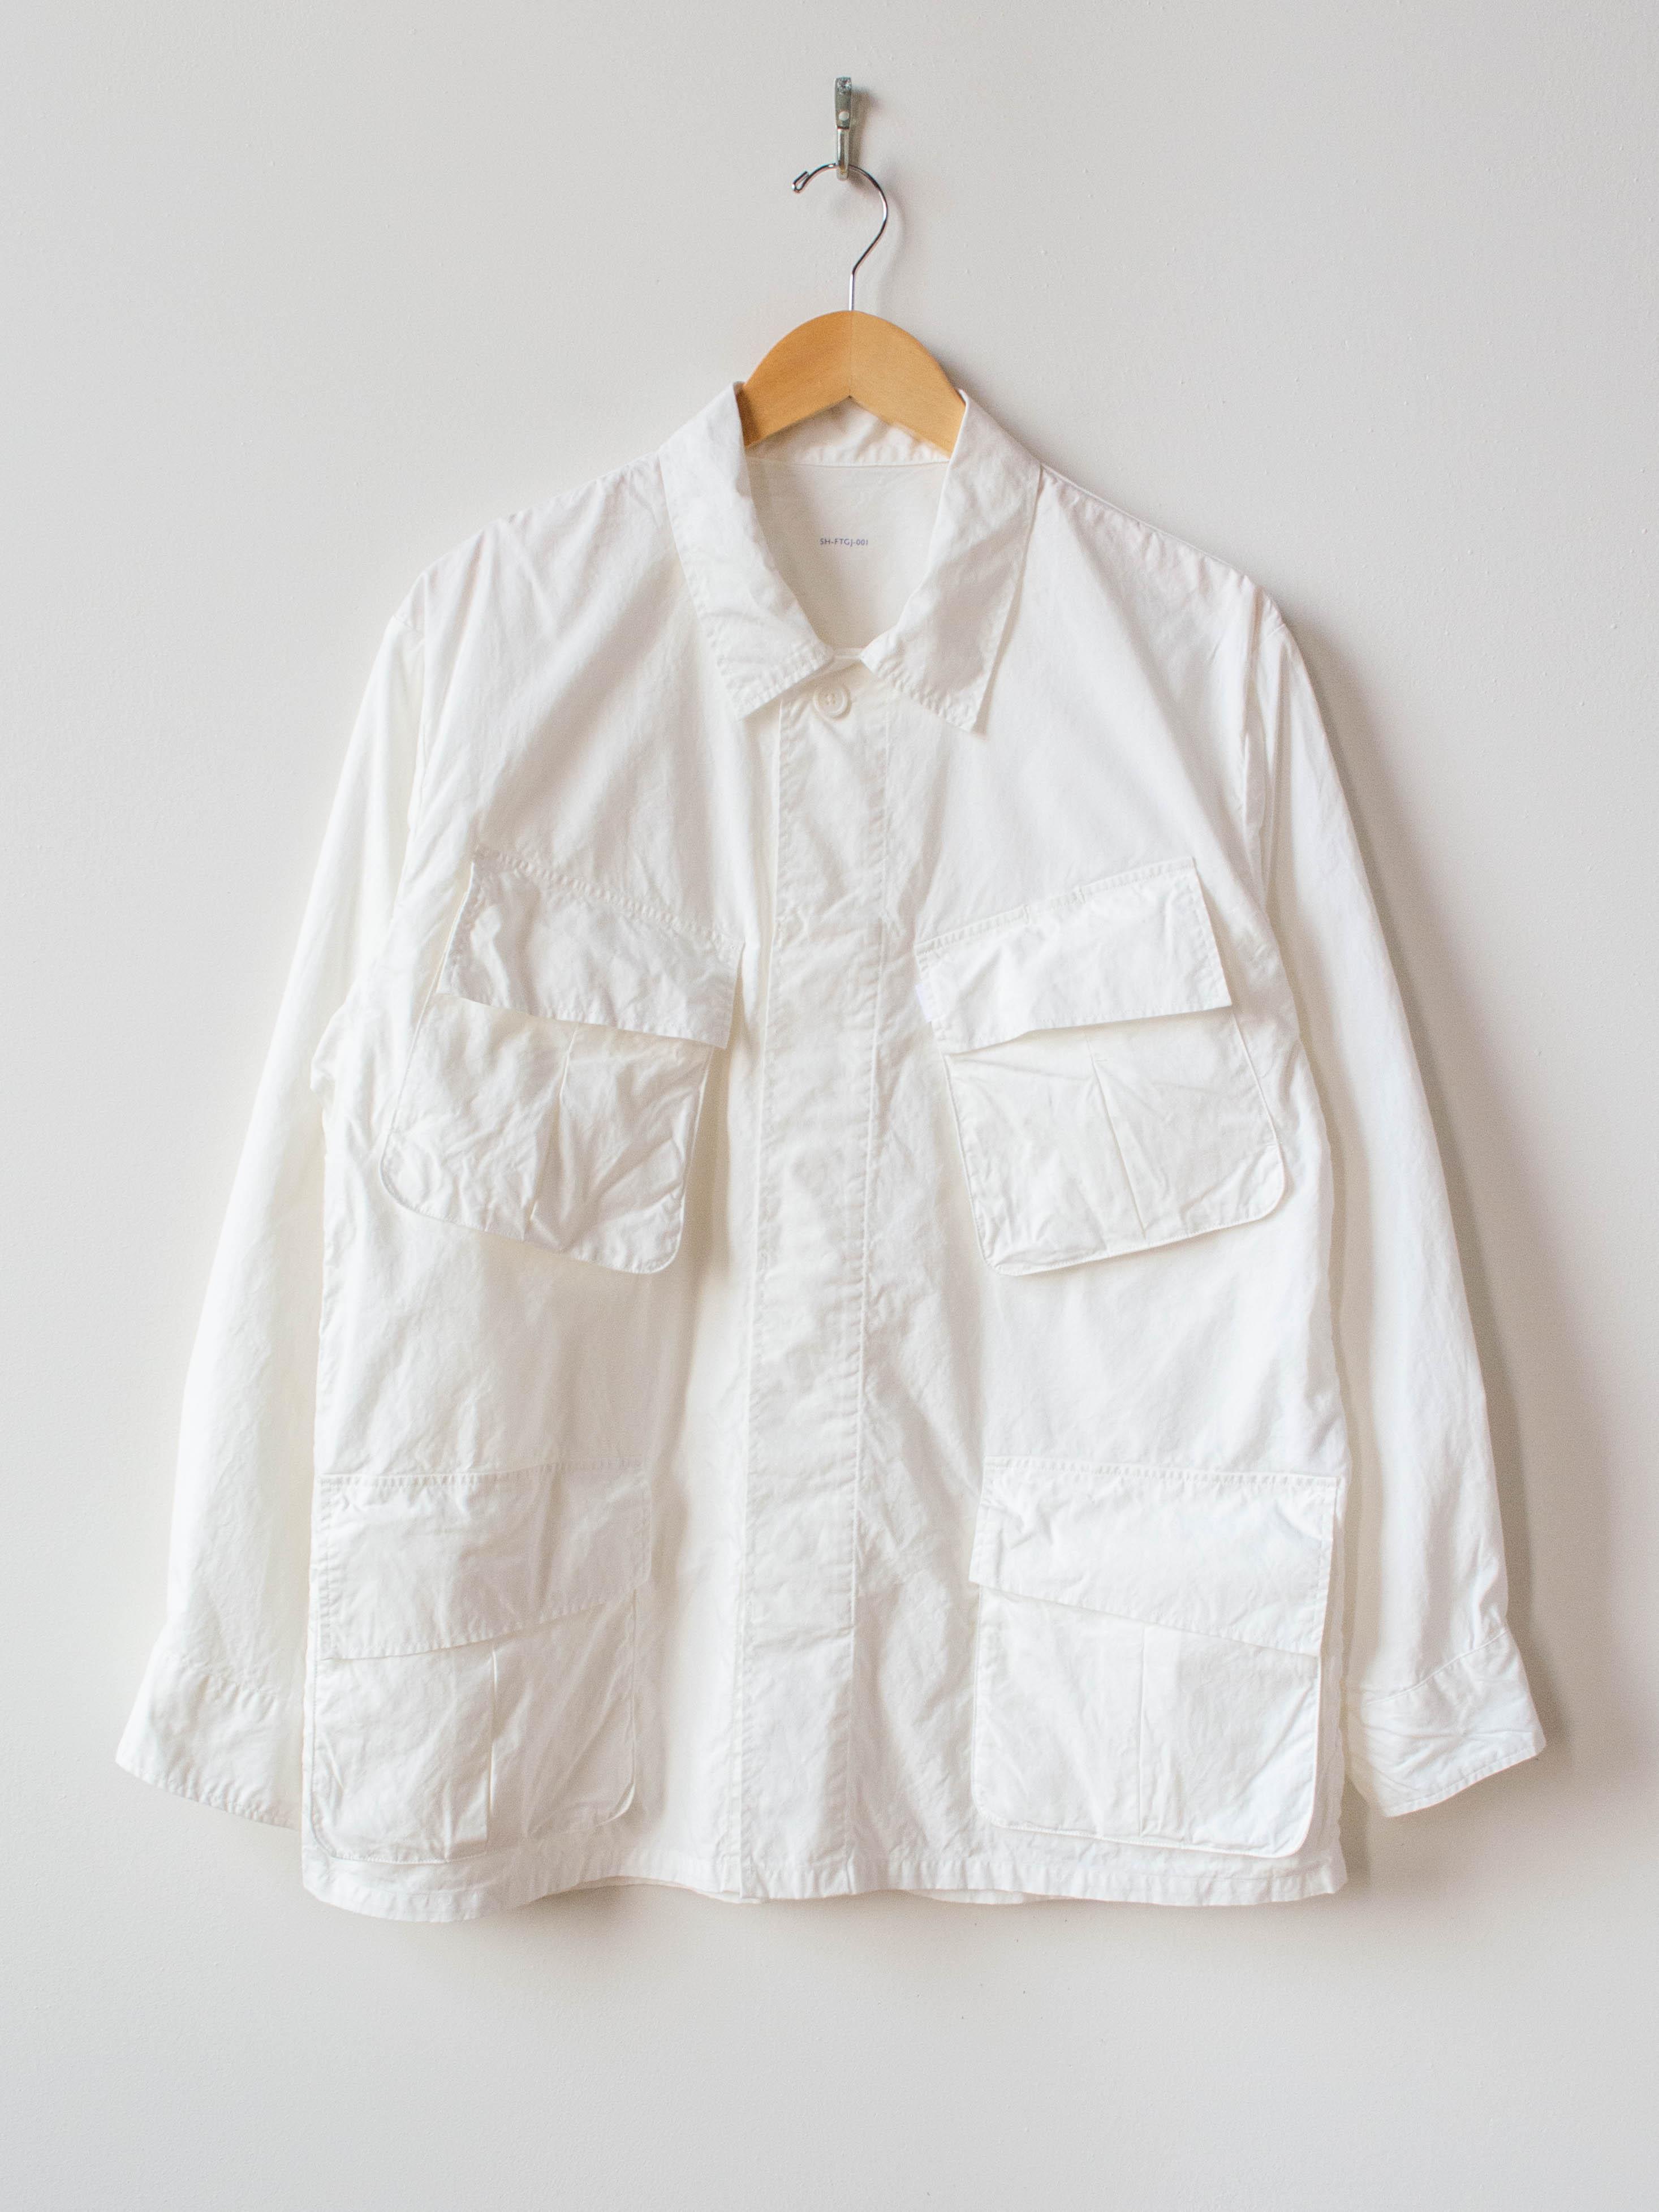 Namu Shop - S H Fatigue Shirt - White